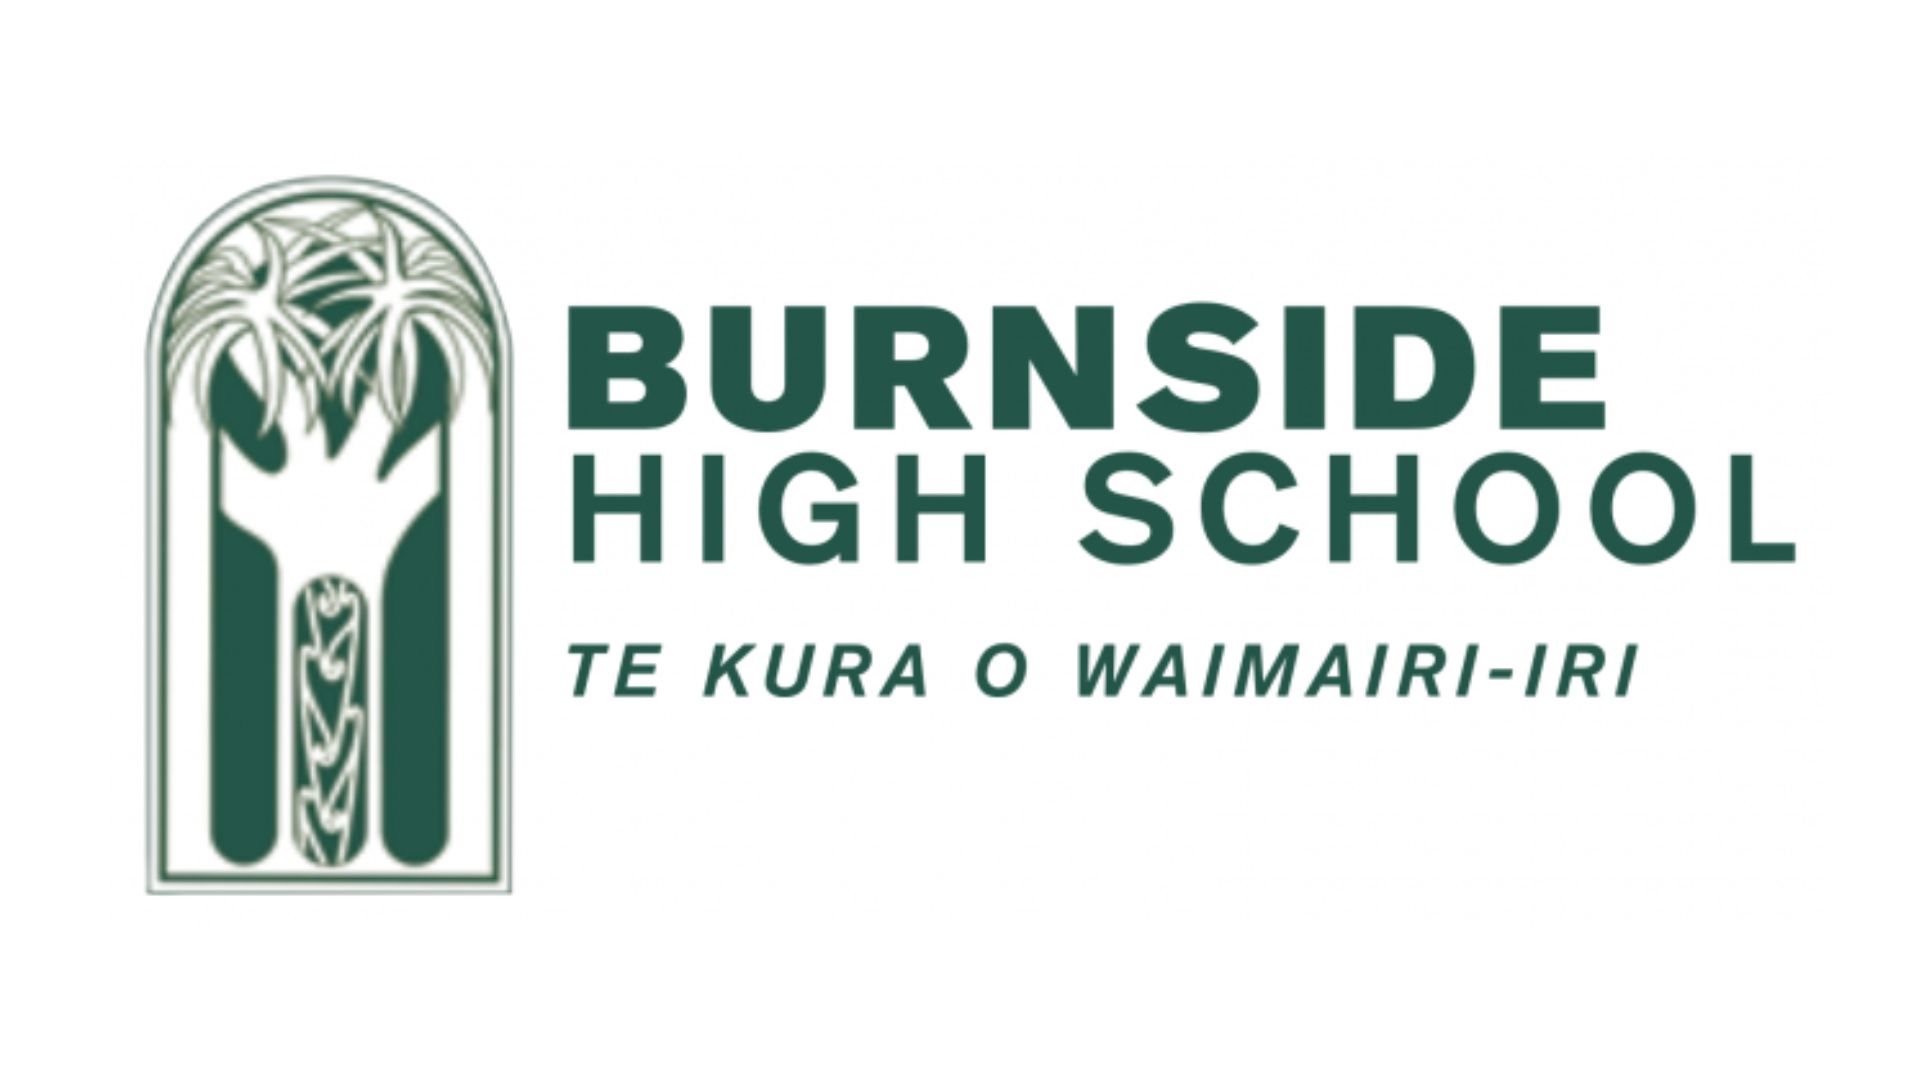 Burnside High School　バーンサイド ハイスクール